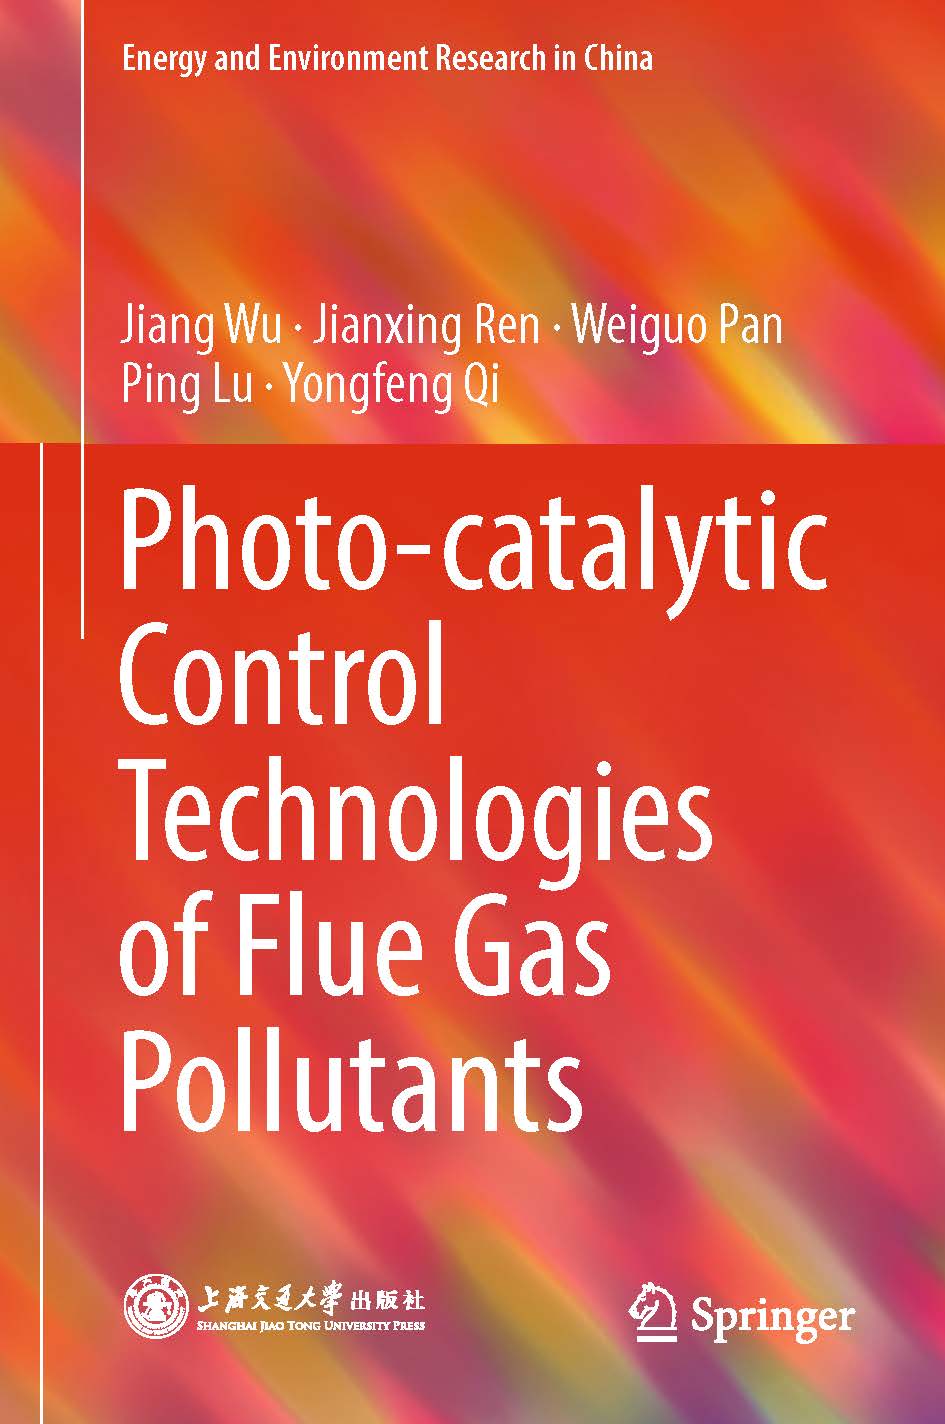 页面提取自－2019_Book_Photo-catalytic Control Technologies of Flue Gas Pollutants.jpg